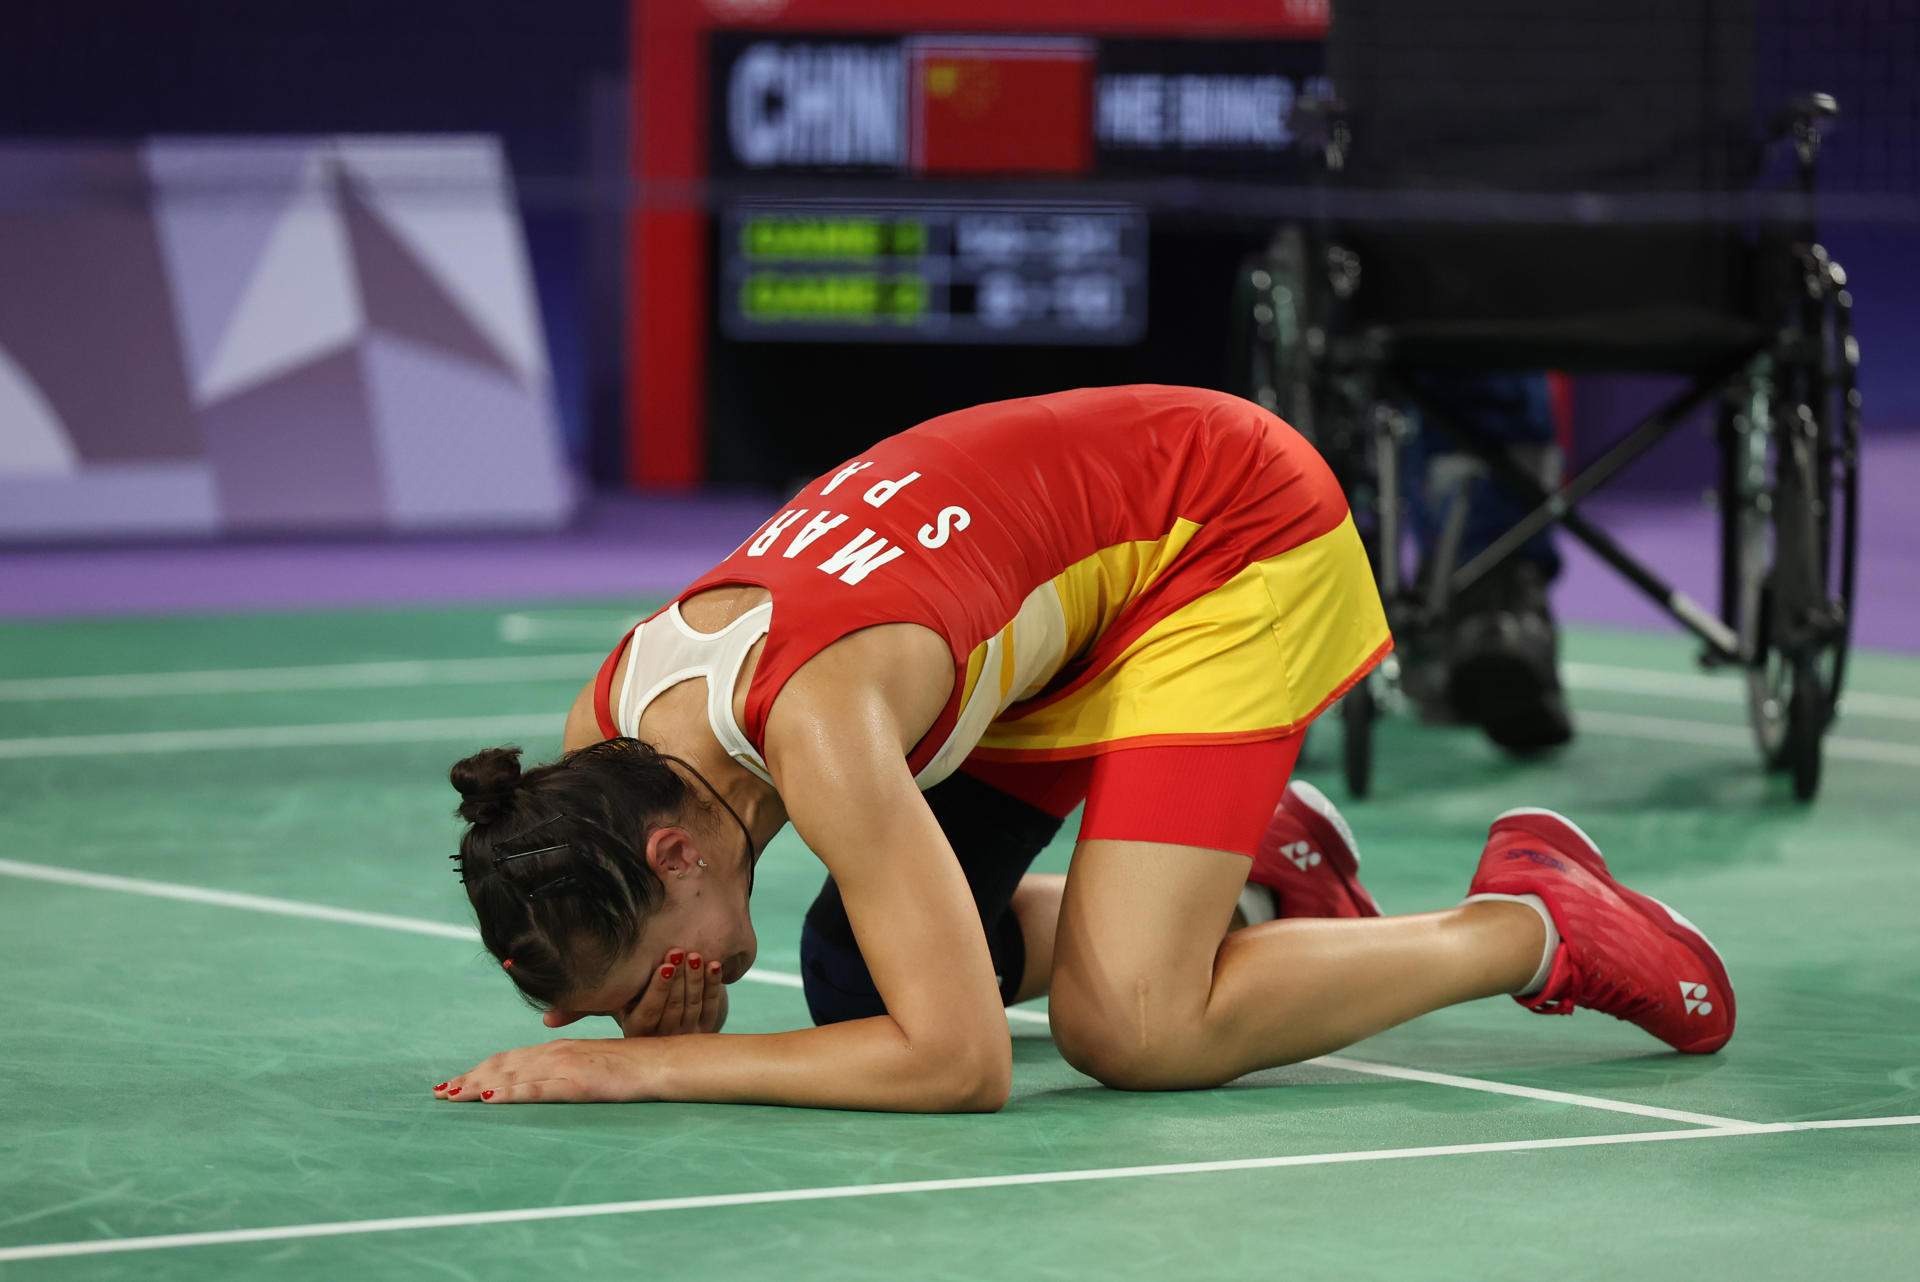 Carolina Marín tiene que abandonar la semifinal de bádminton por lesión y dice adiós a las medallas en París